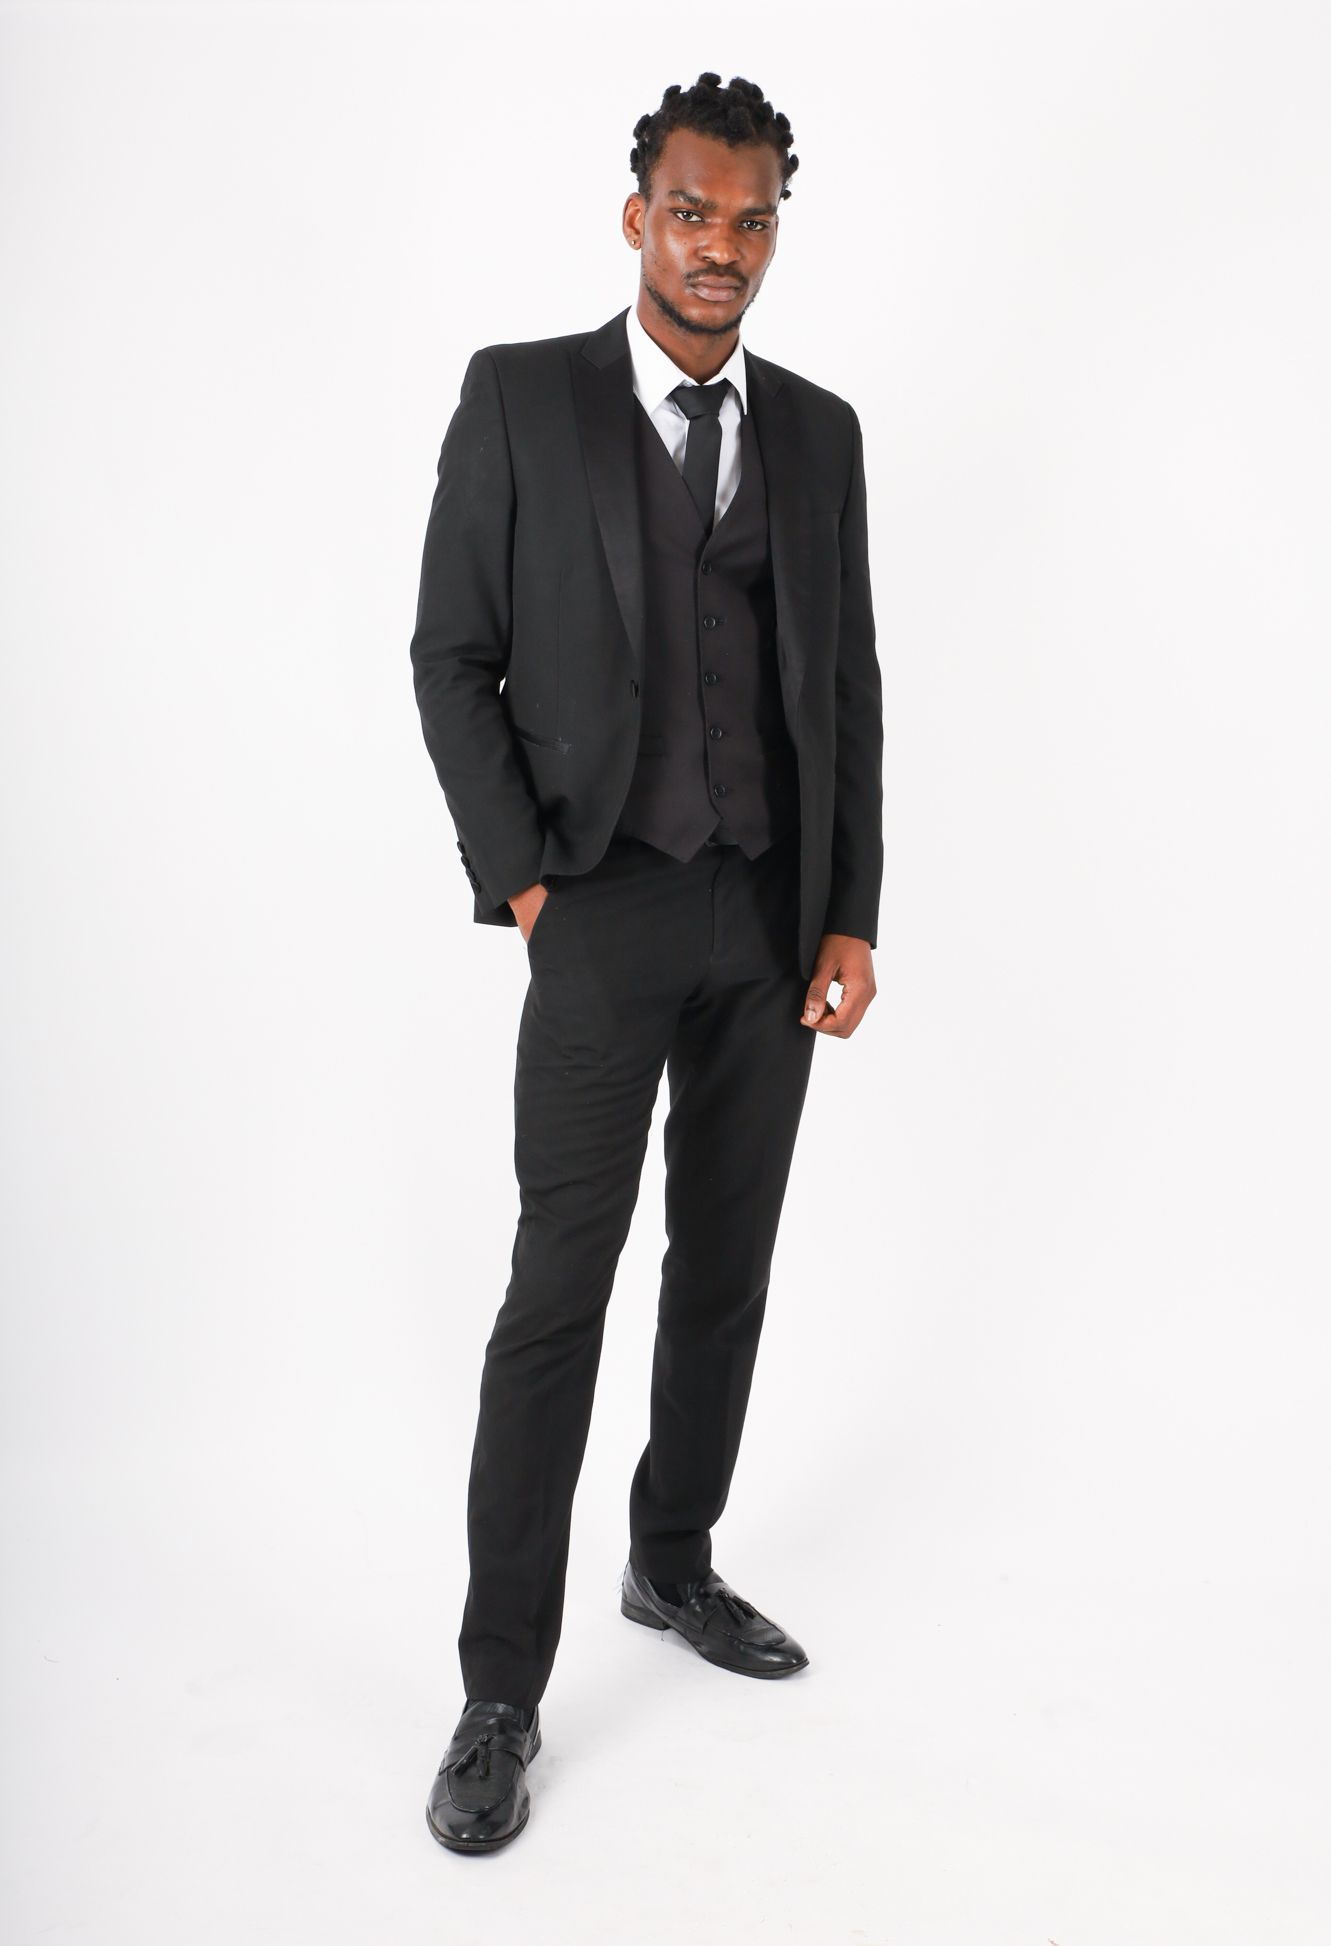 Profile Picture of Daniel Adeyiga